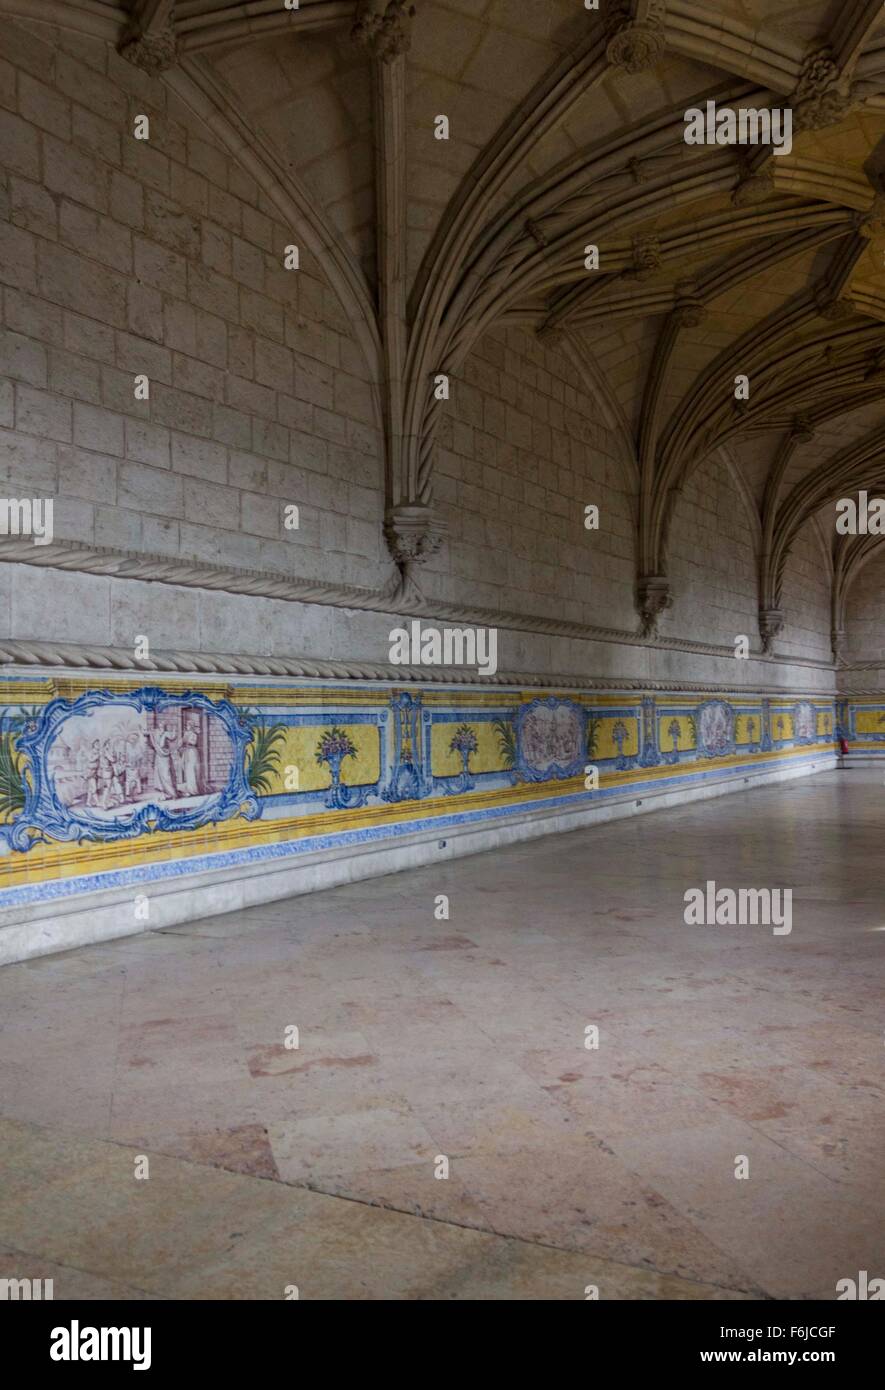 Lisbona, Portogallo - 24 ottobre 2014: Gli interni delle camere del monastero di San Geronimo a Lisbona, con soffitto a volta e azulejos del bo Foto Stock